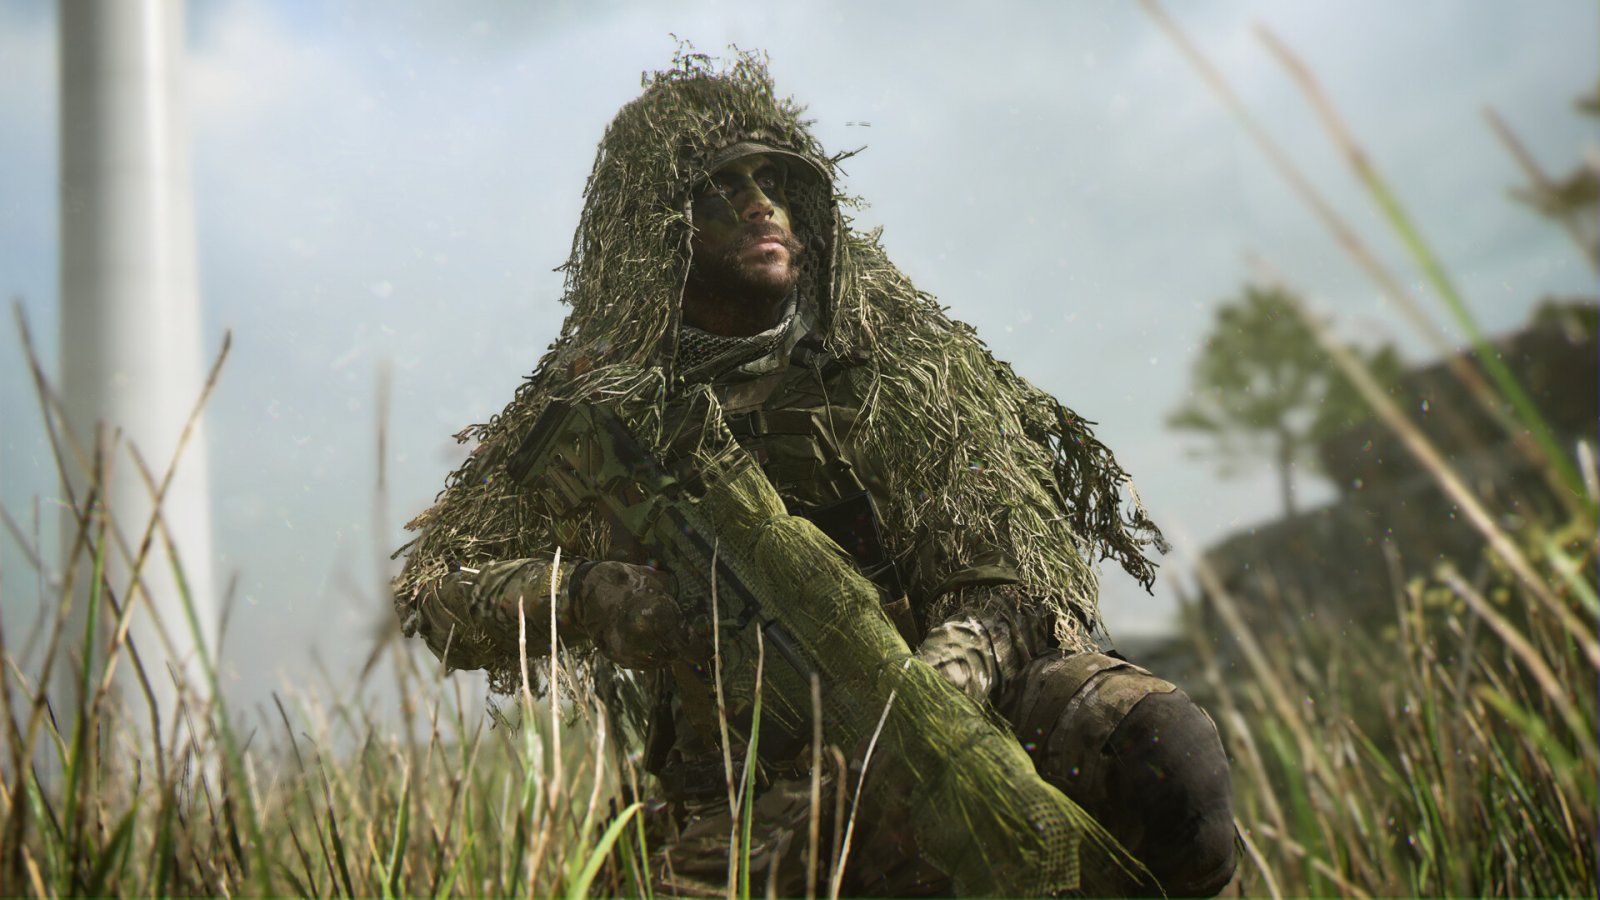 Call of Duty arriverà a 150 milioni di giocatori in più, afferma Microsoft in una pubblicità in UK